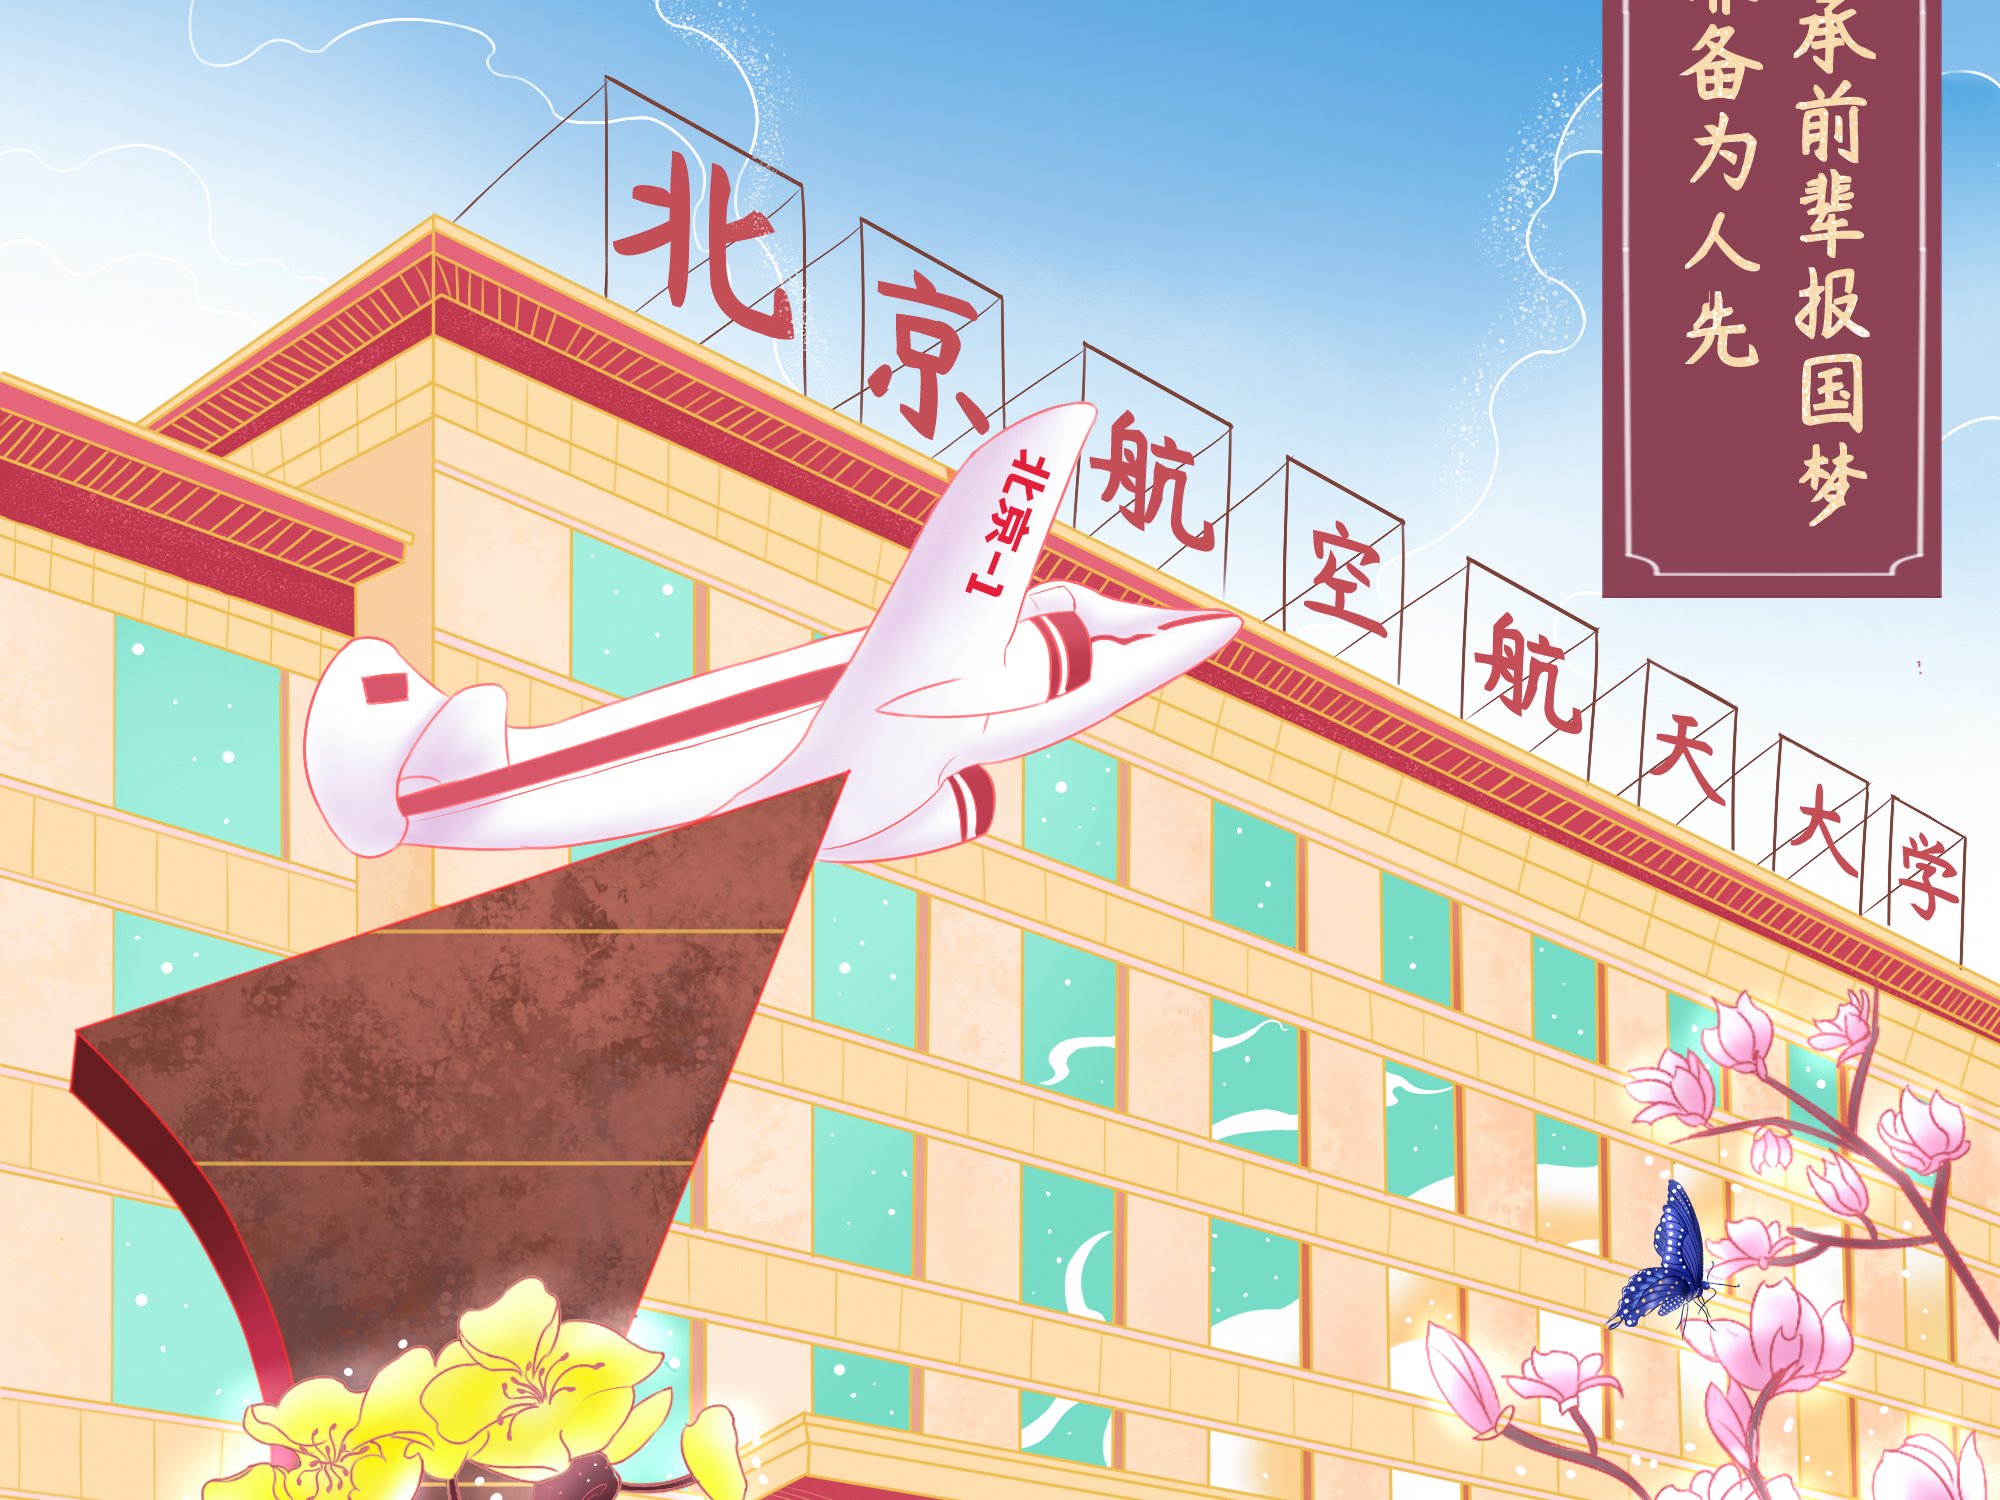 北京航空航天大学 - 堆糖，美图壁纸兴趣社区